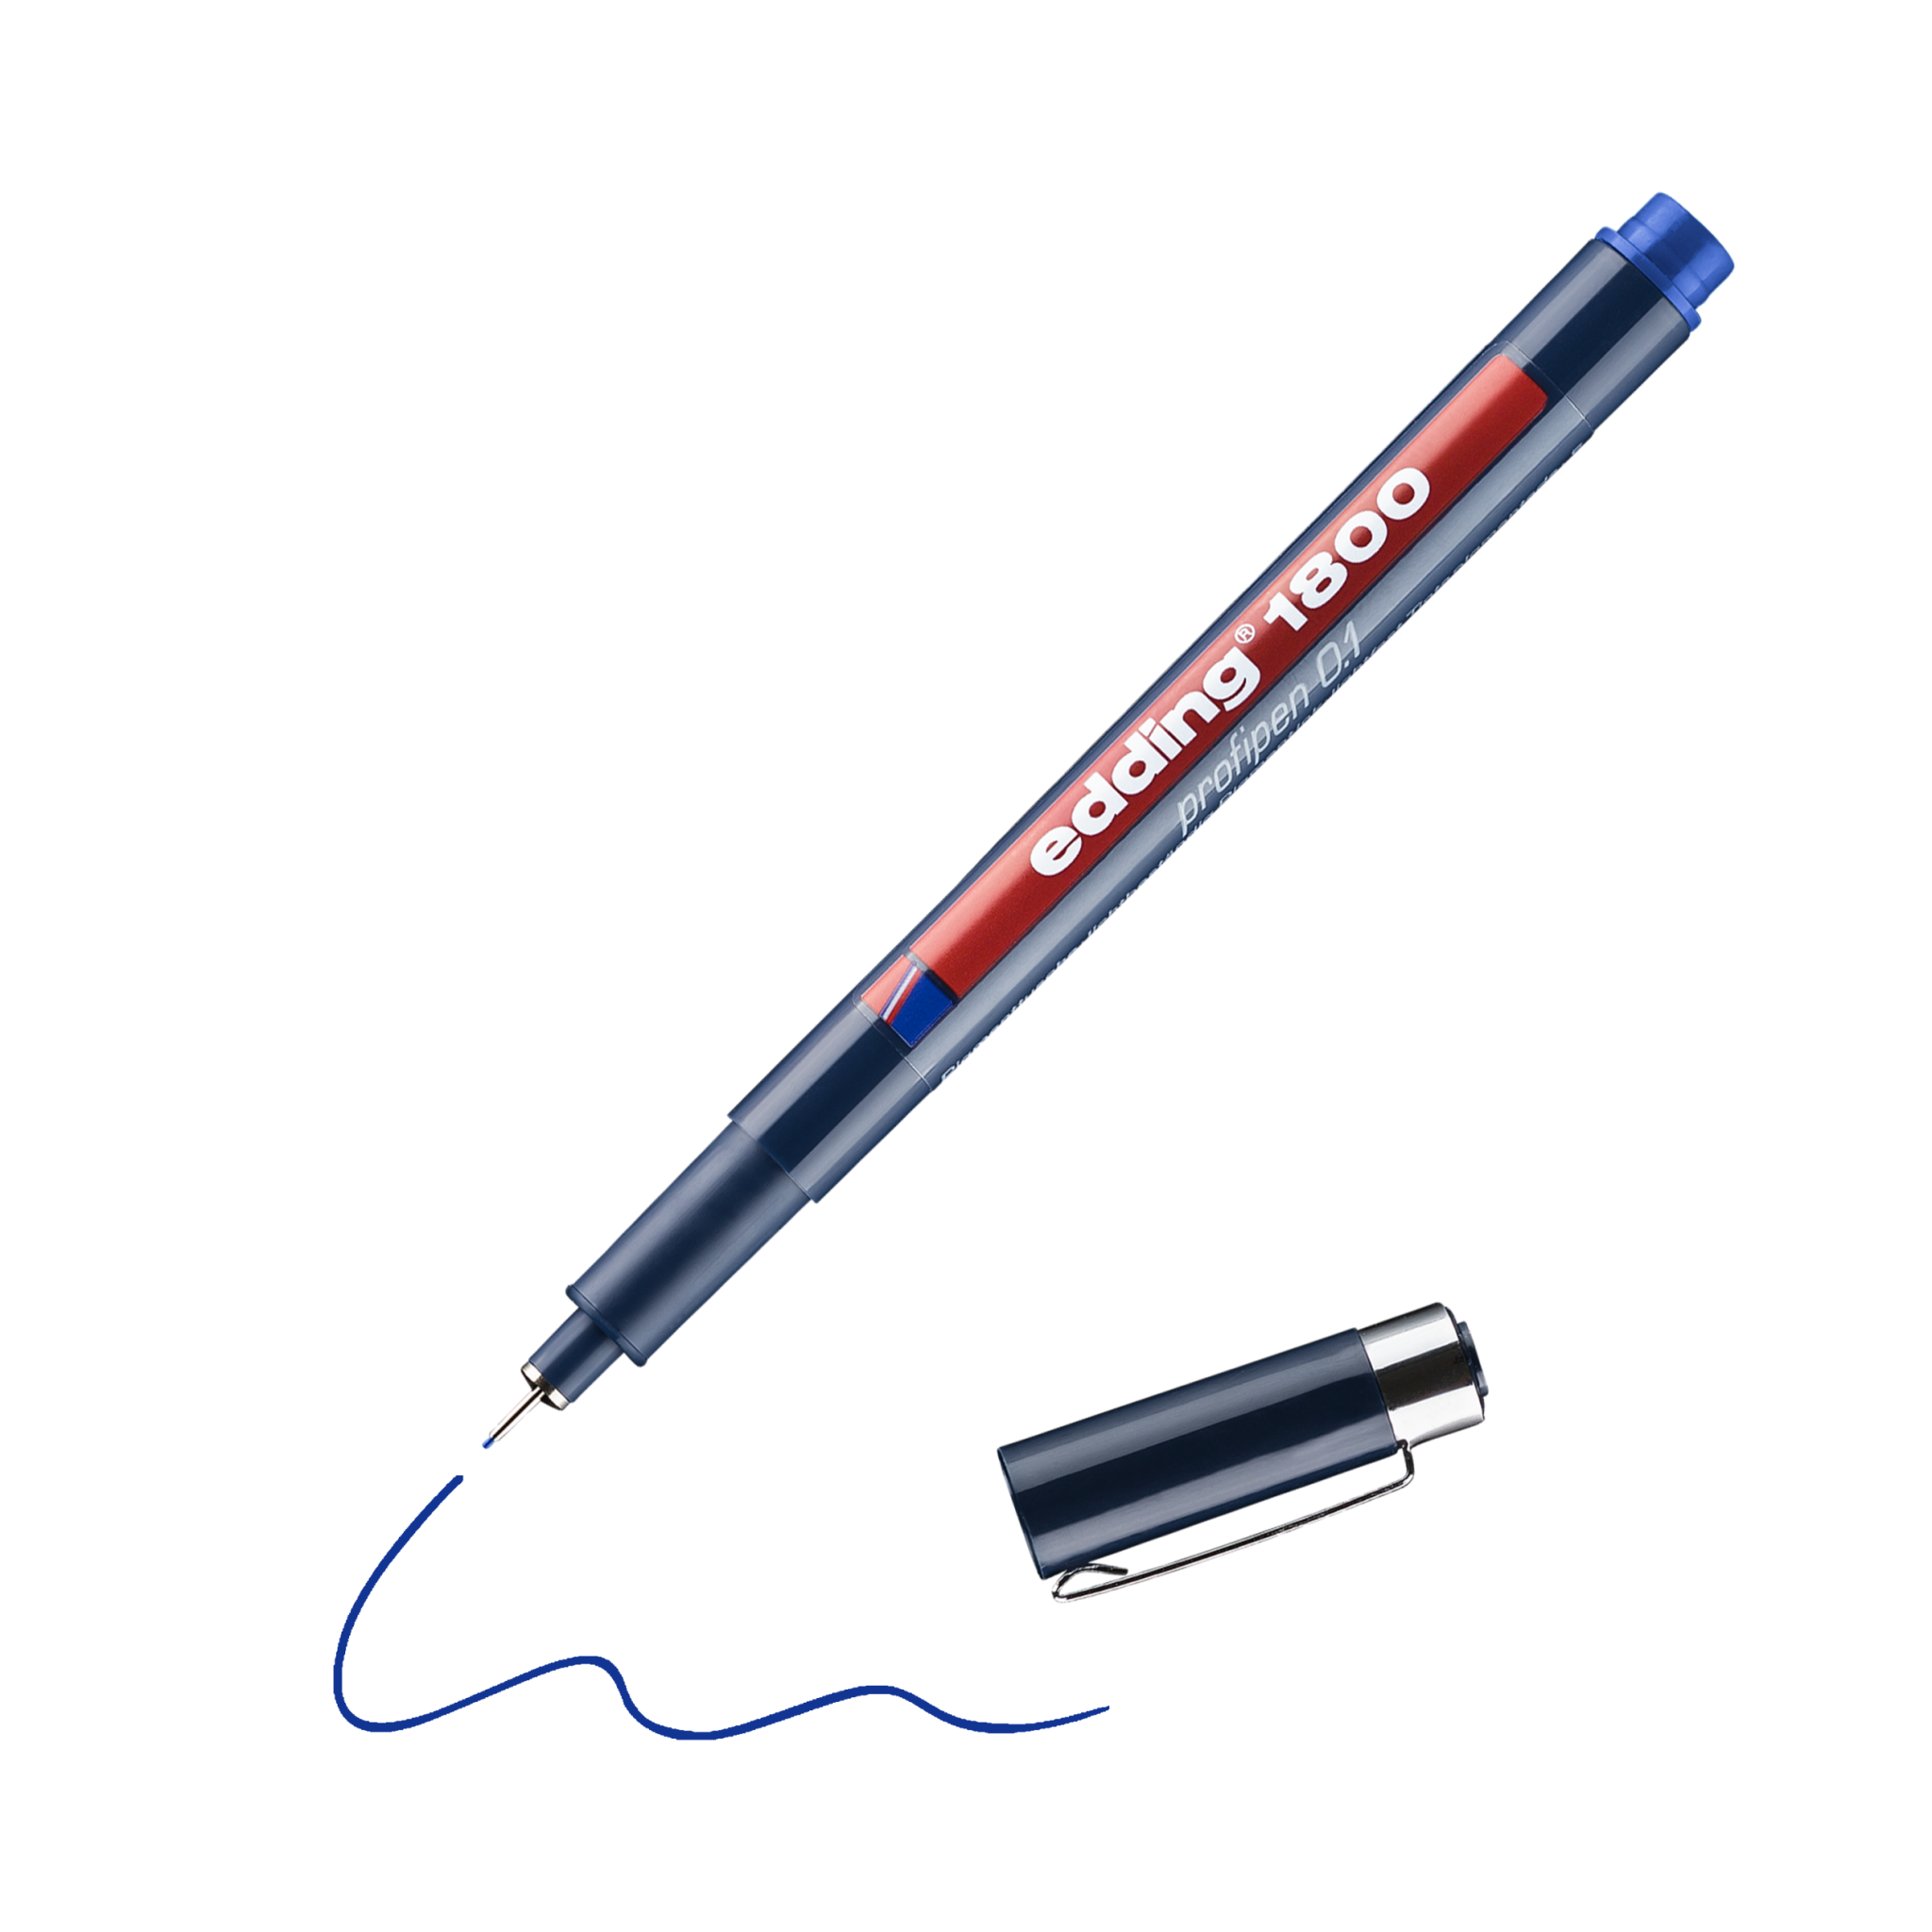 Ein blauer edding 1800 Präzisionsfeinschreiber mit abgenommener Kappe, der eine feine blaue Linie zeichnet.